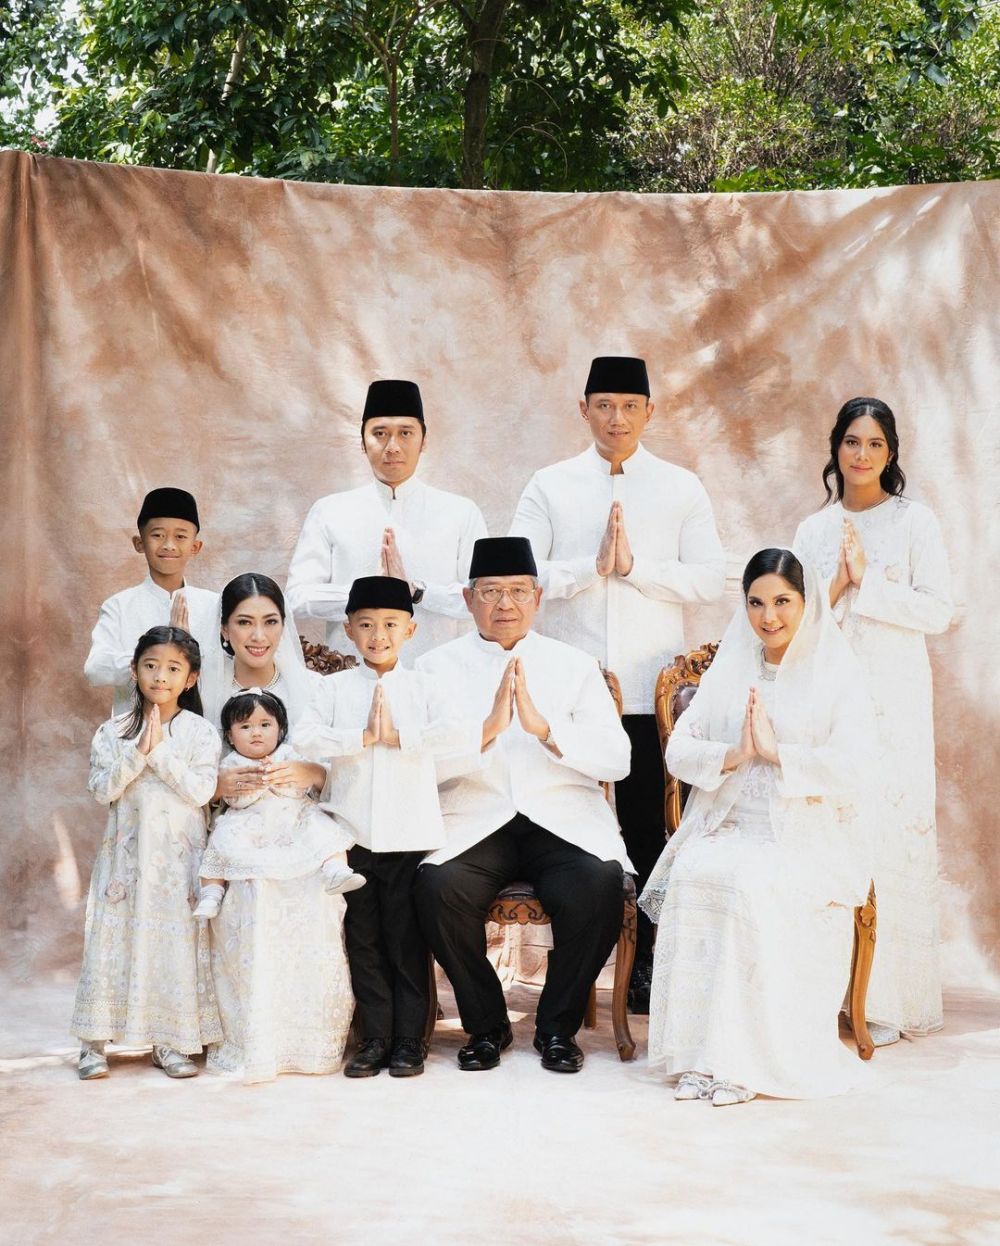 Biasa tampil tomboi tanpa makeup, 9 potret Almira Yudhoyono saat pakai dress ini bikin terpana